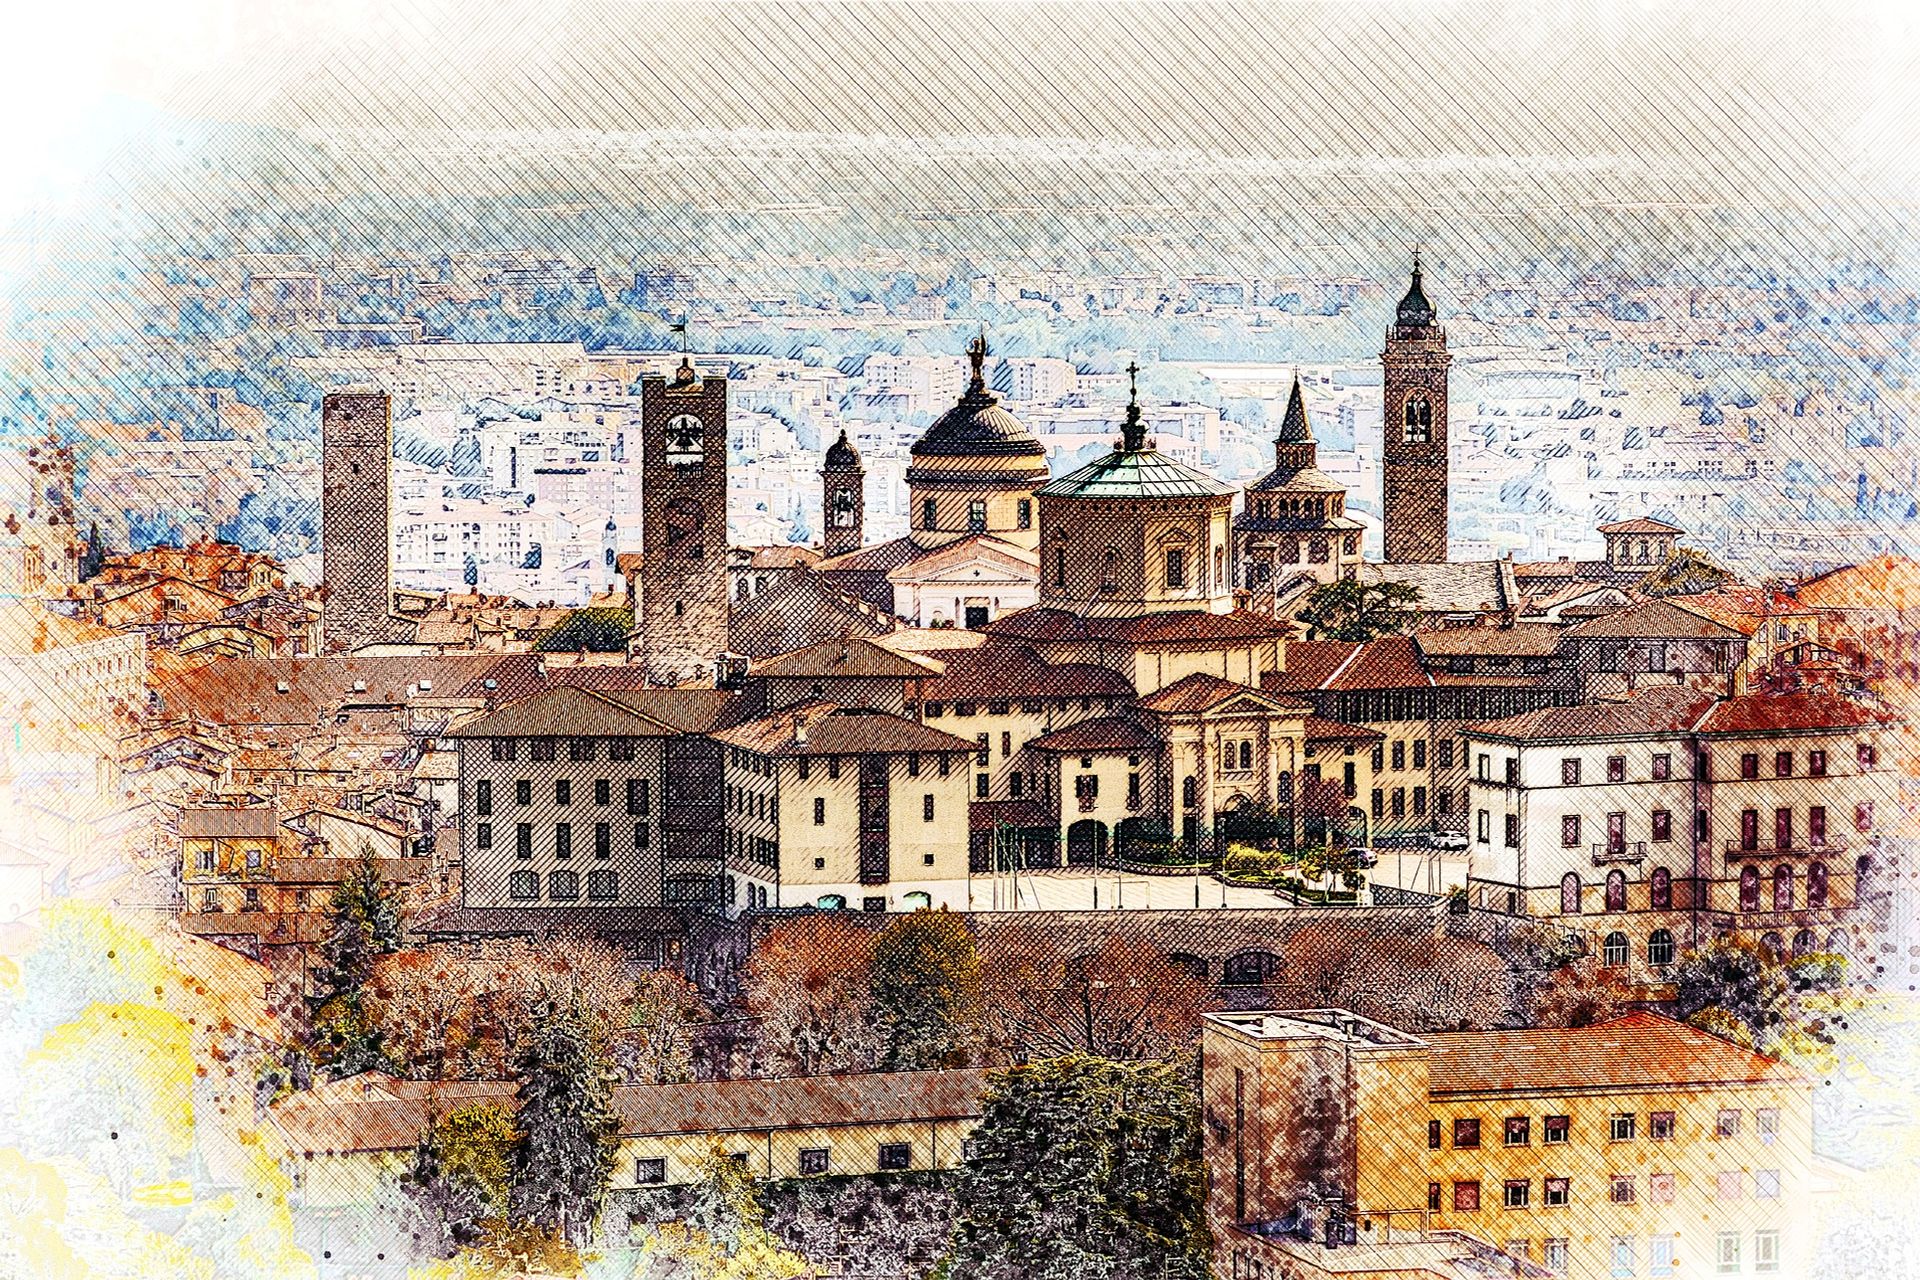 Il disegno della città alta di Bergamo, spesso colpita da problemi alla tiroide